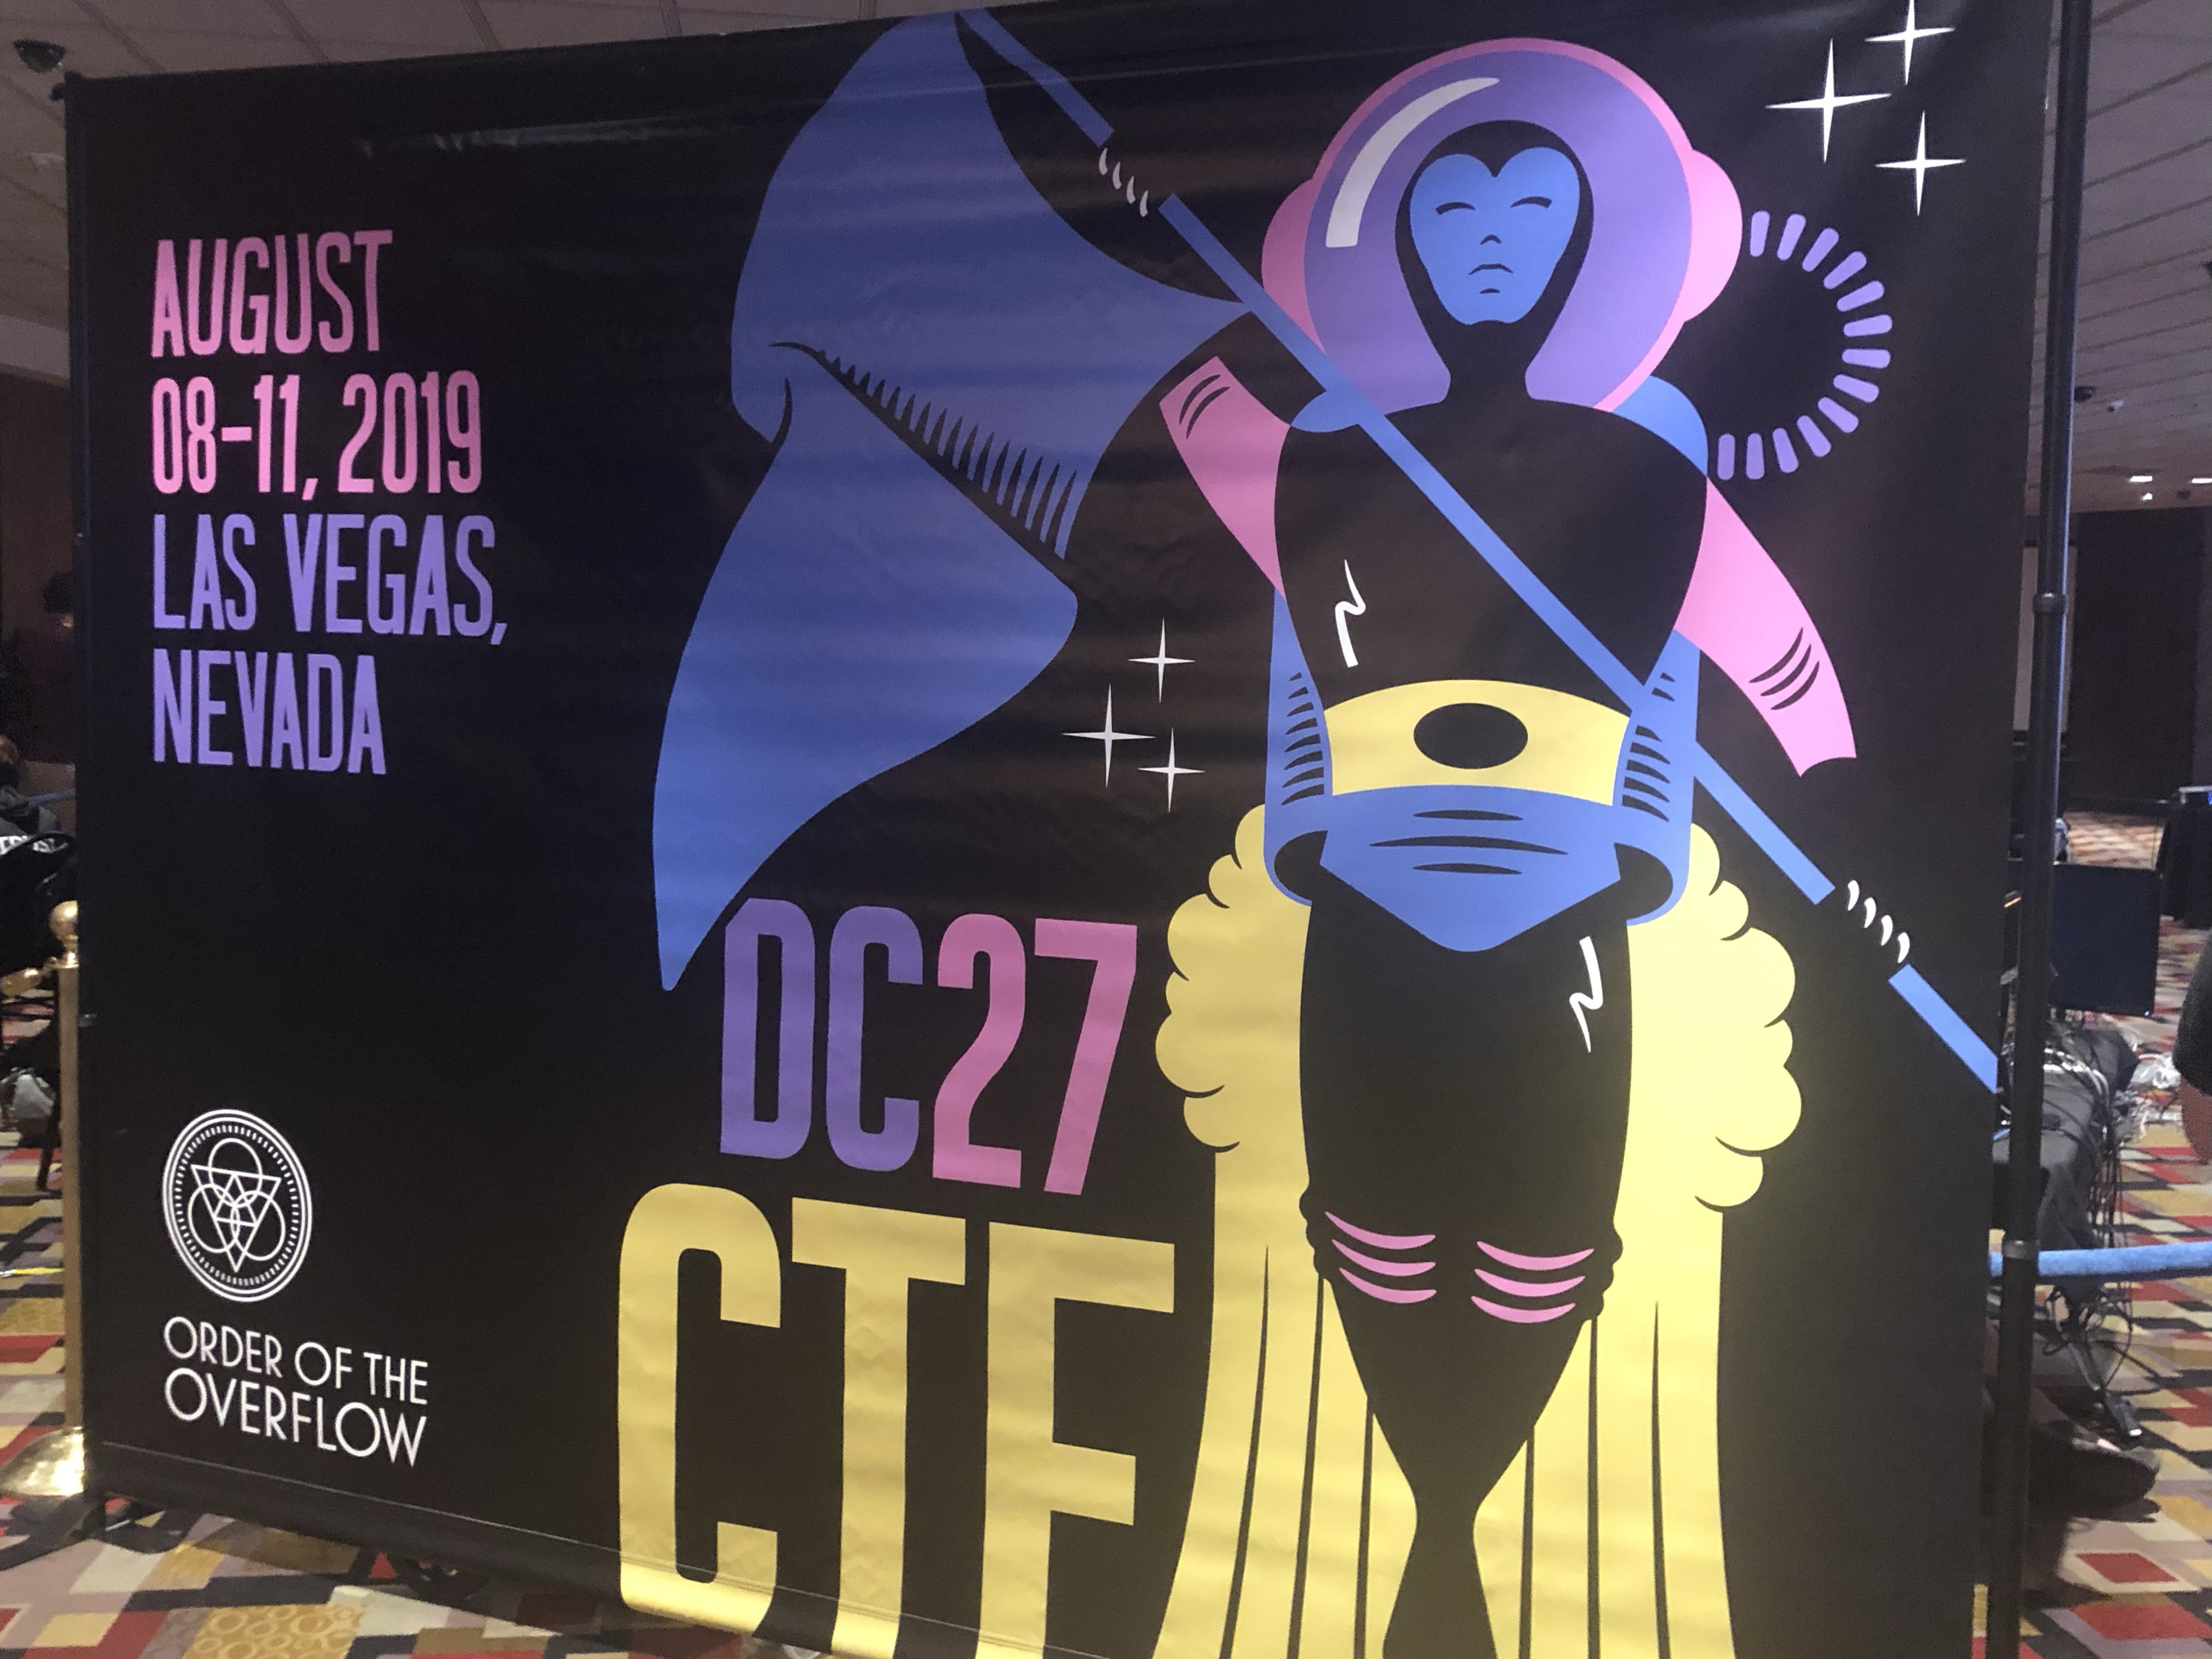 DEF CON 27 - hacking conference 2019